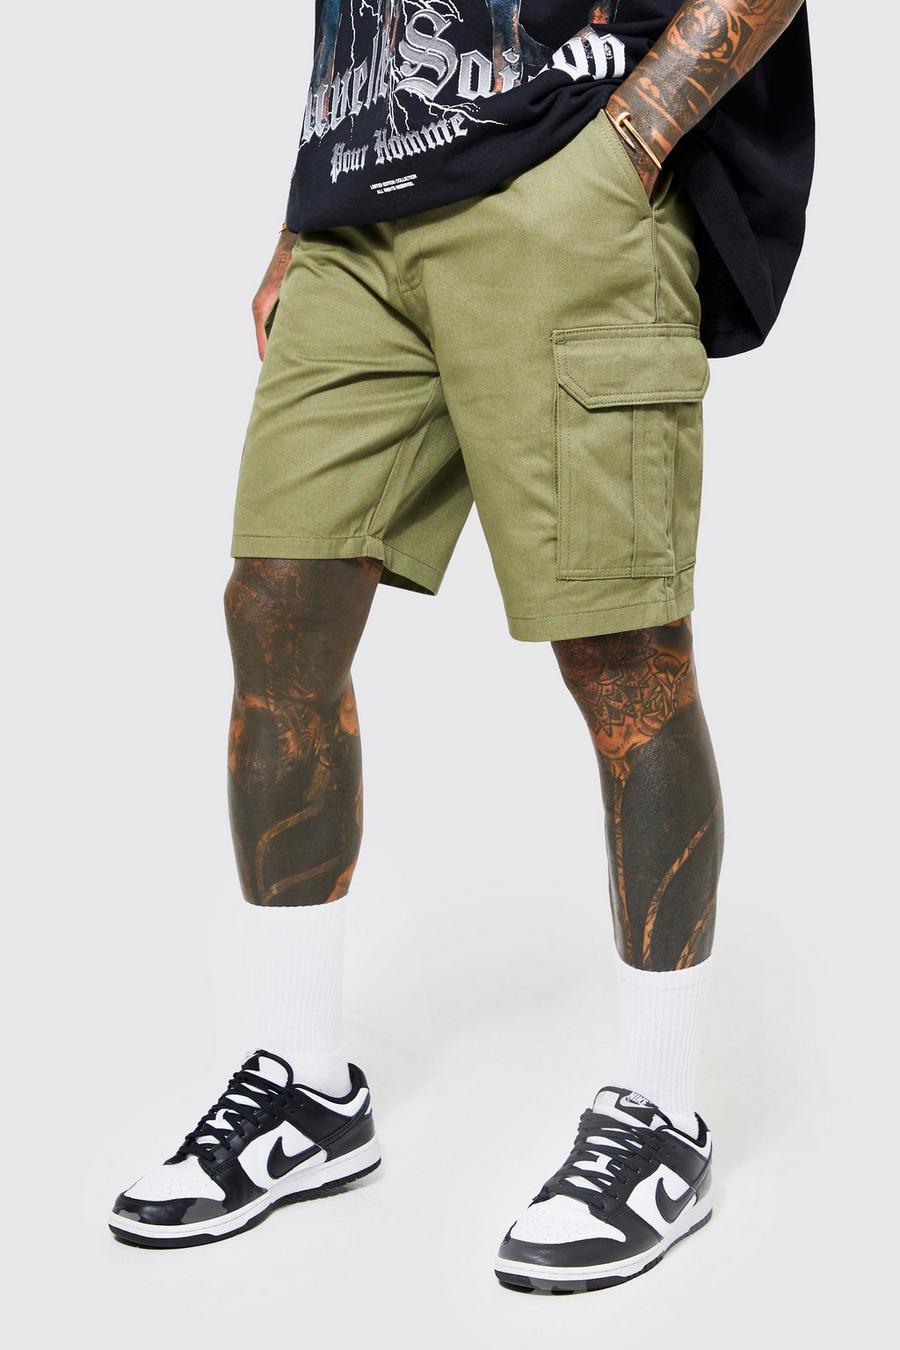 Kleding Herenkleding Shorts Heren Real Leather Cargo Shorts Club dragen shorts 